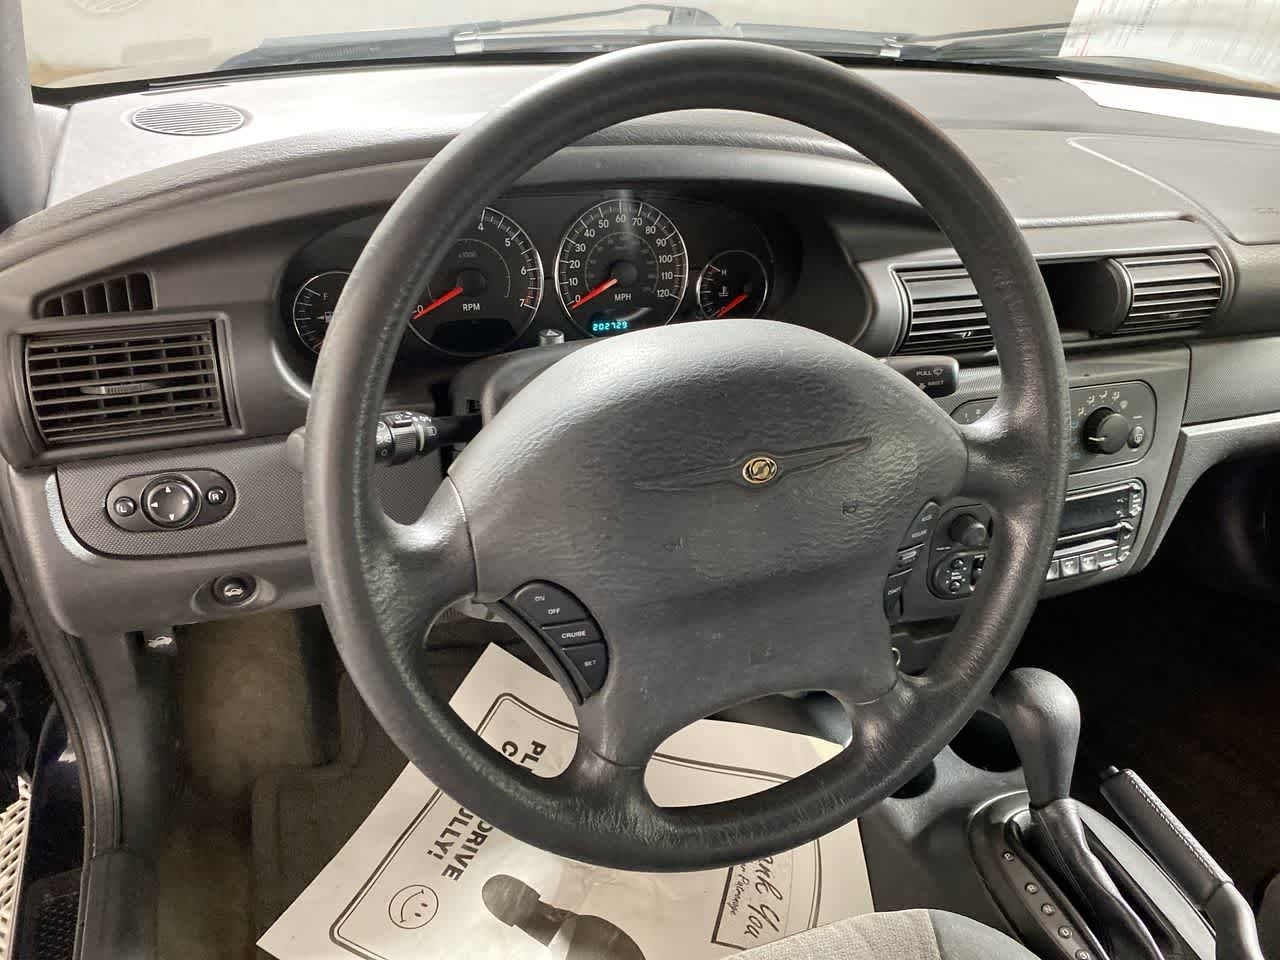 2004 Chrysler Sebring LX